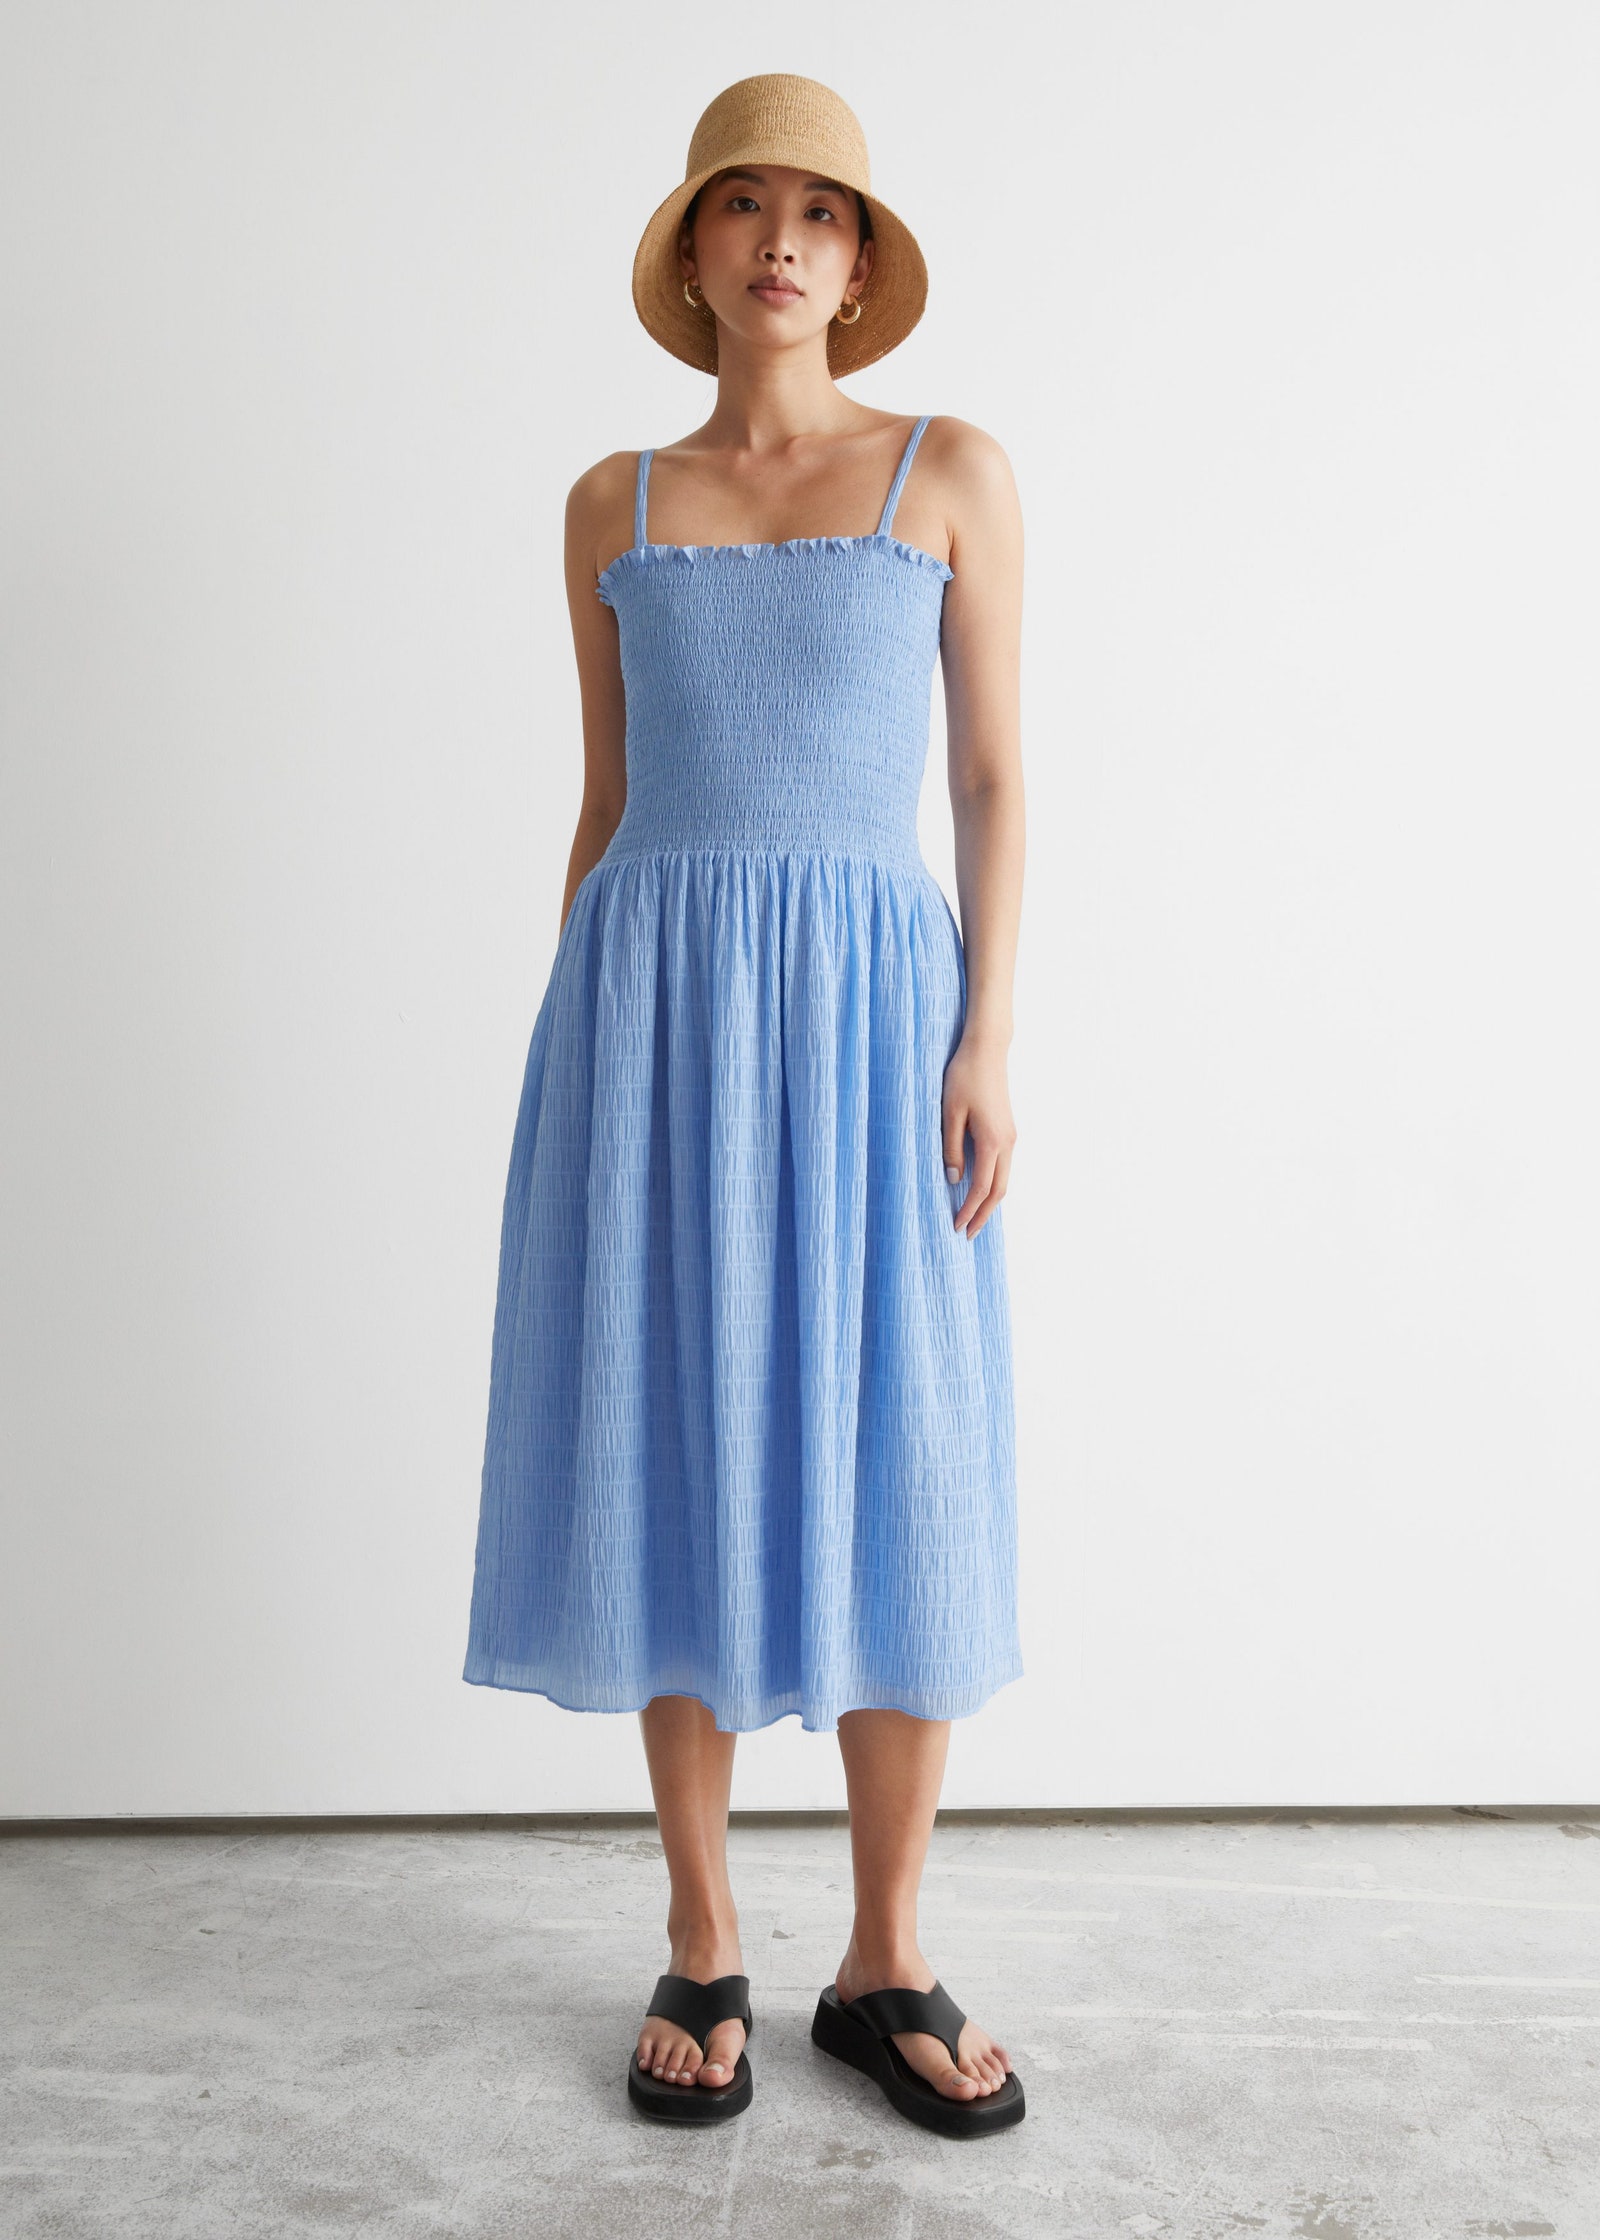 10 модных вещей голубого цвета платья рубашка жакет топ брюки и юбка